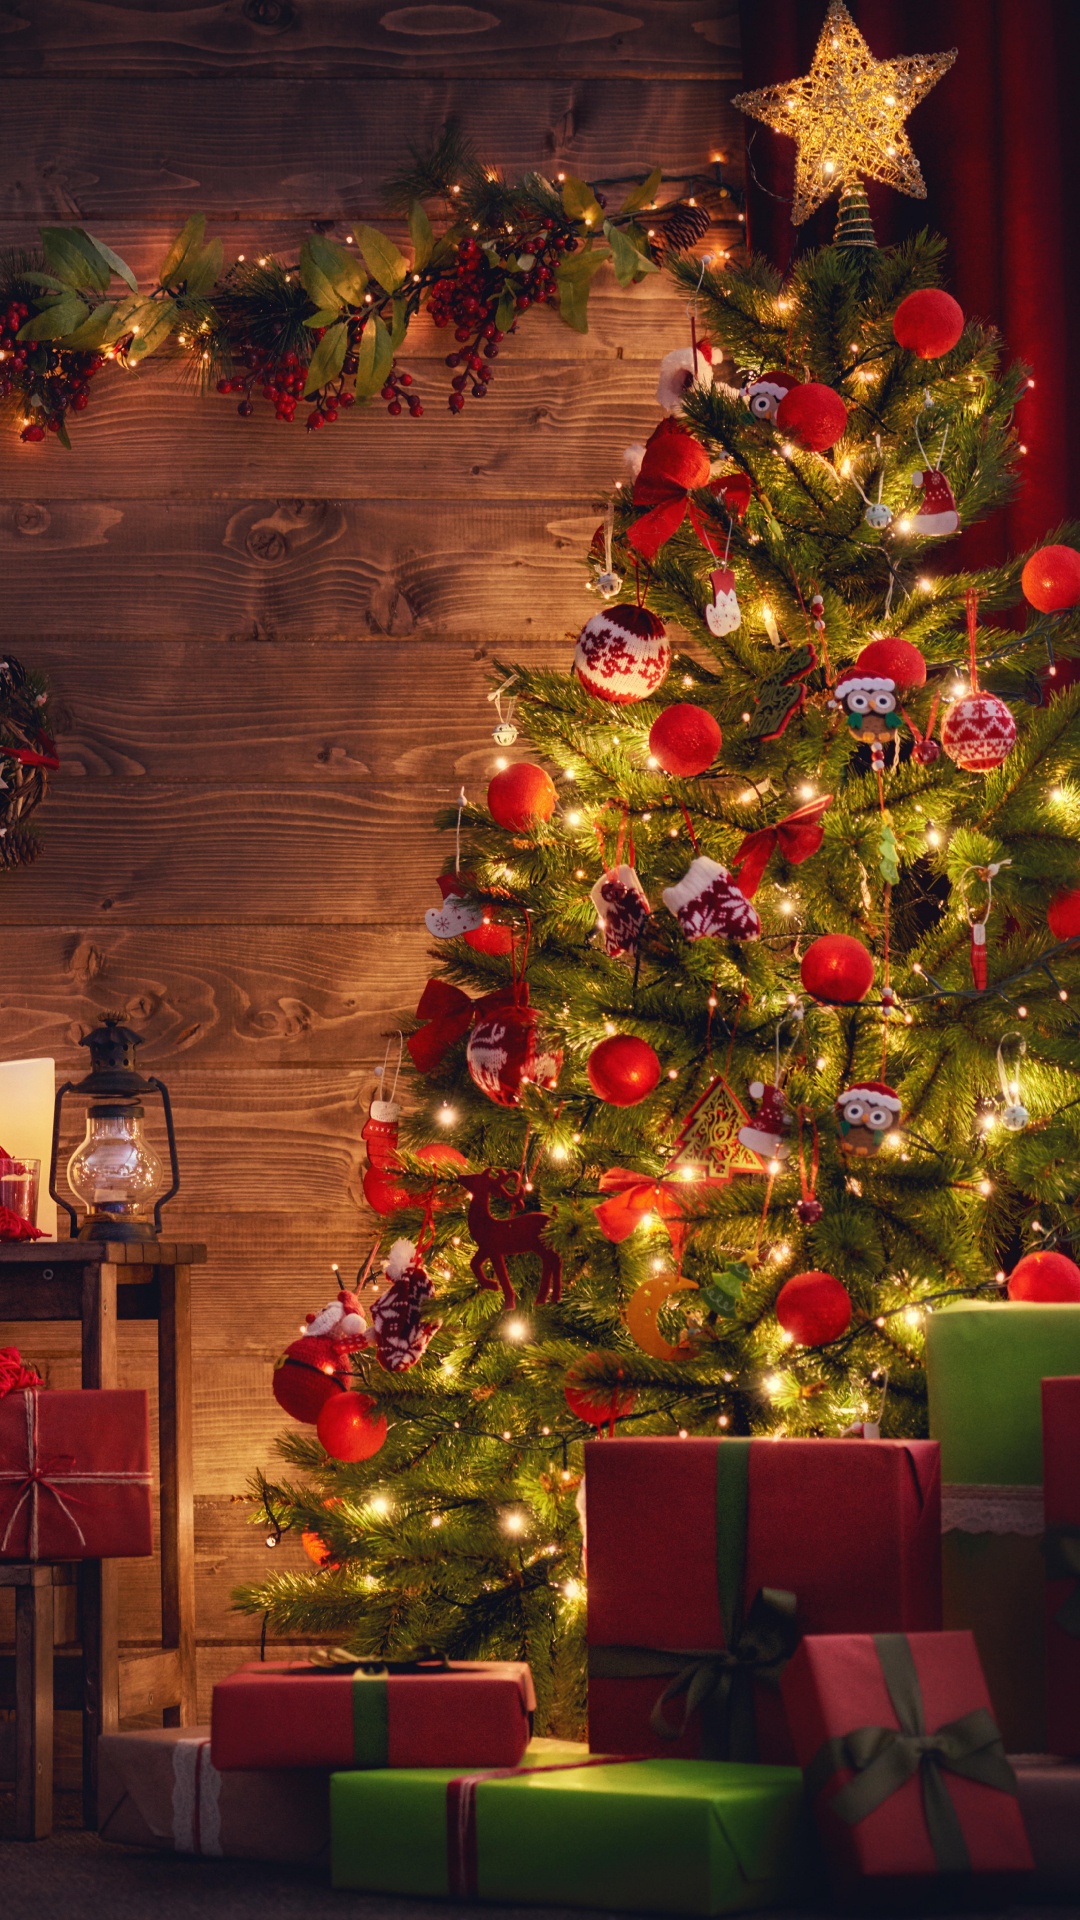 Weihnachtsbaum, Weihnachten, Weihnachtsdekoration, Weihnachtsbeleuchtung, Hölzerner Weihnachts-Adventskalender. Wallpaper in 1080x1920 Resolution